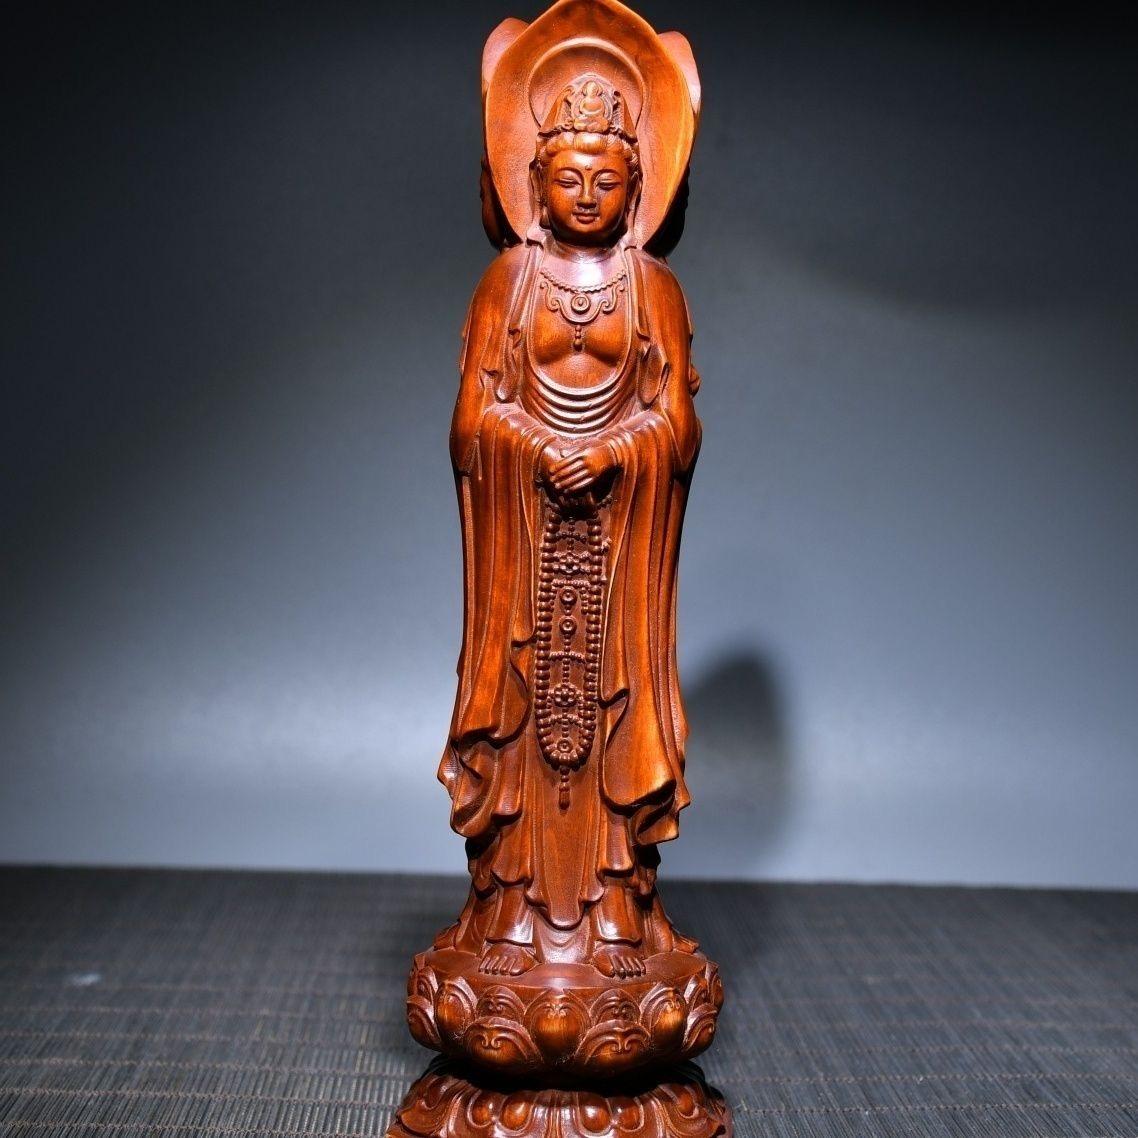 Diese chinesische Vintage Holzschnitzerei dreiseitigen Guan Yin Buddhas Statue ist sehr gut erhalten. Dreiseitiges Guanyin bezieht sich auf eine Statue von Guanyin mit drei Seiten. Die vordere Guanyin hält eine Schriftschatulle, die rechte Guanyin